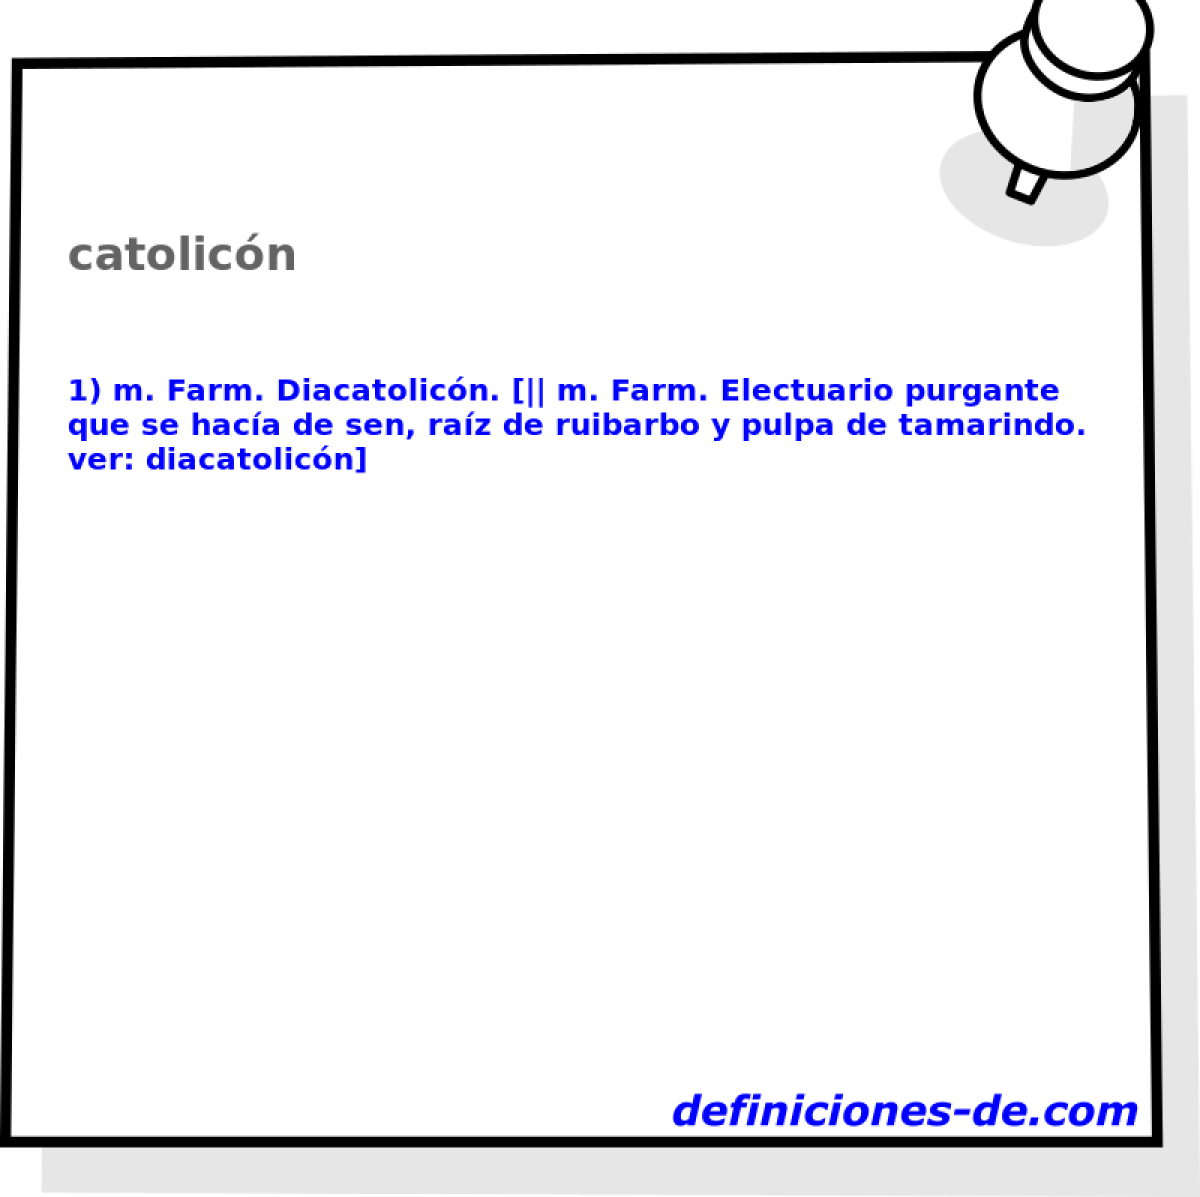 catolicn 